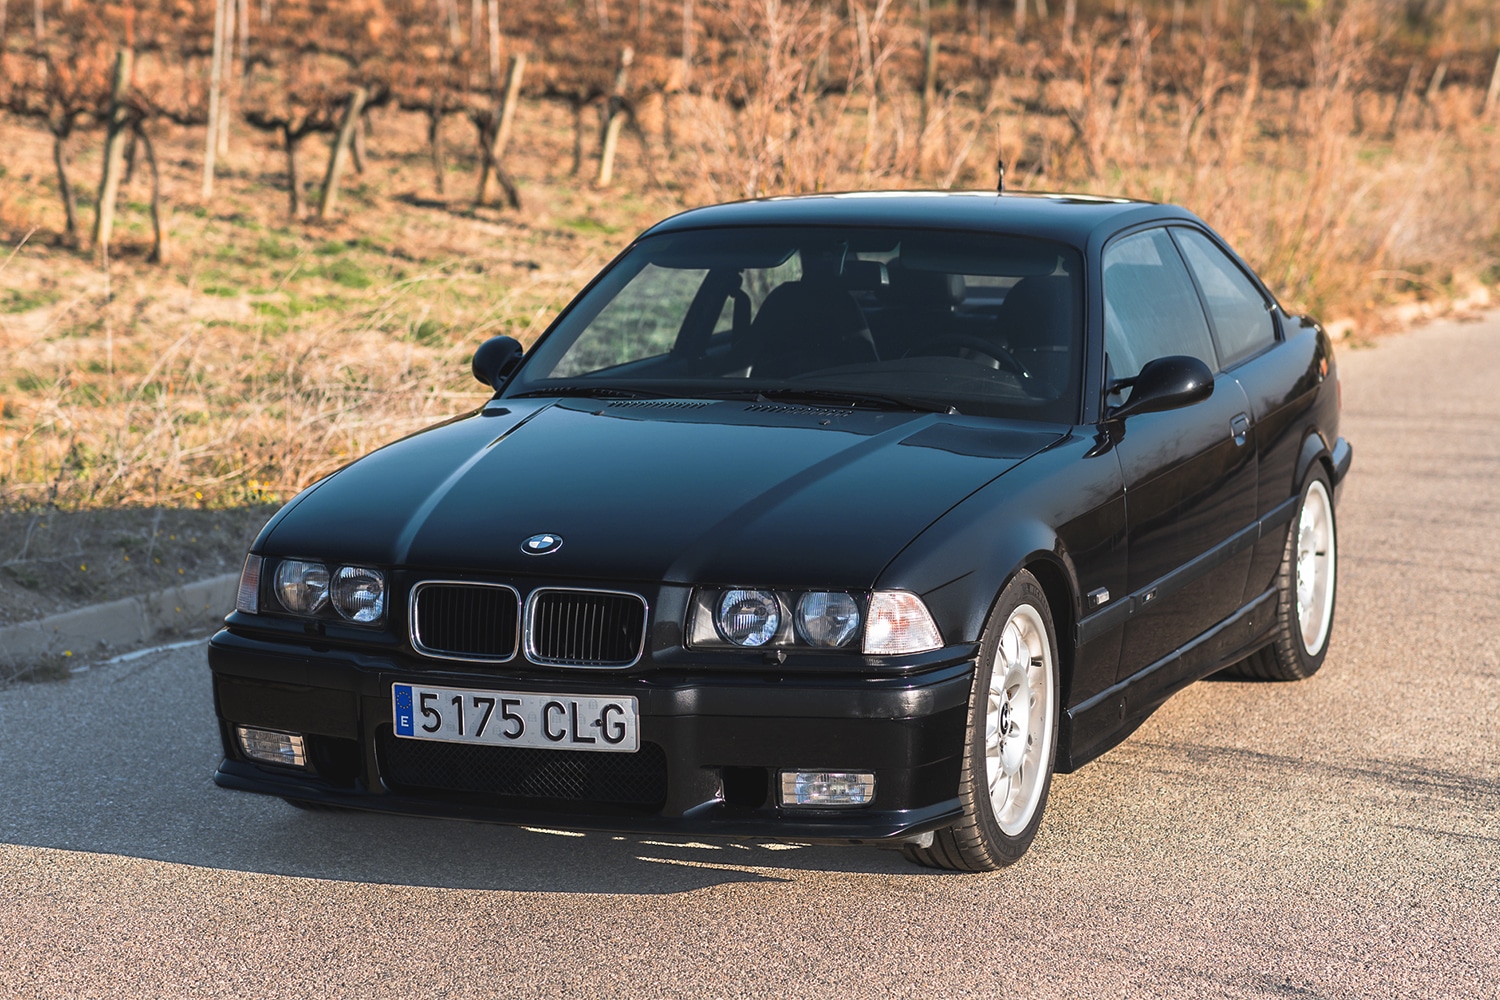 Subasta y venta del modelo 1996 BMW E36 M3 - SoulAuto